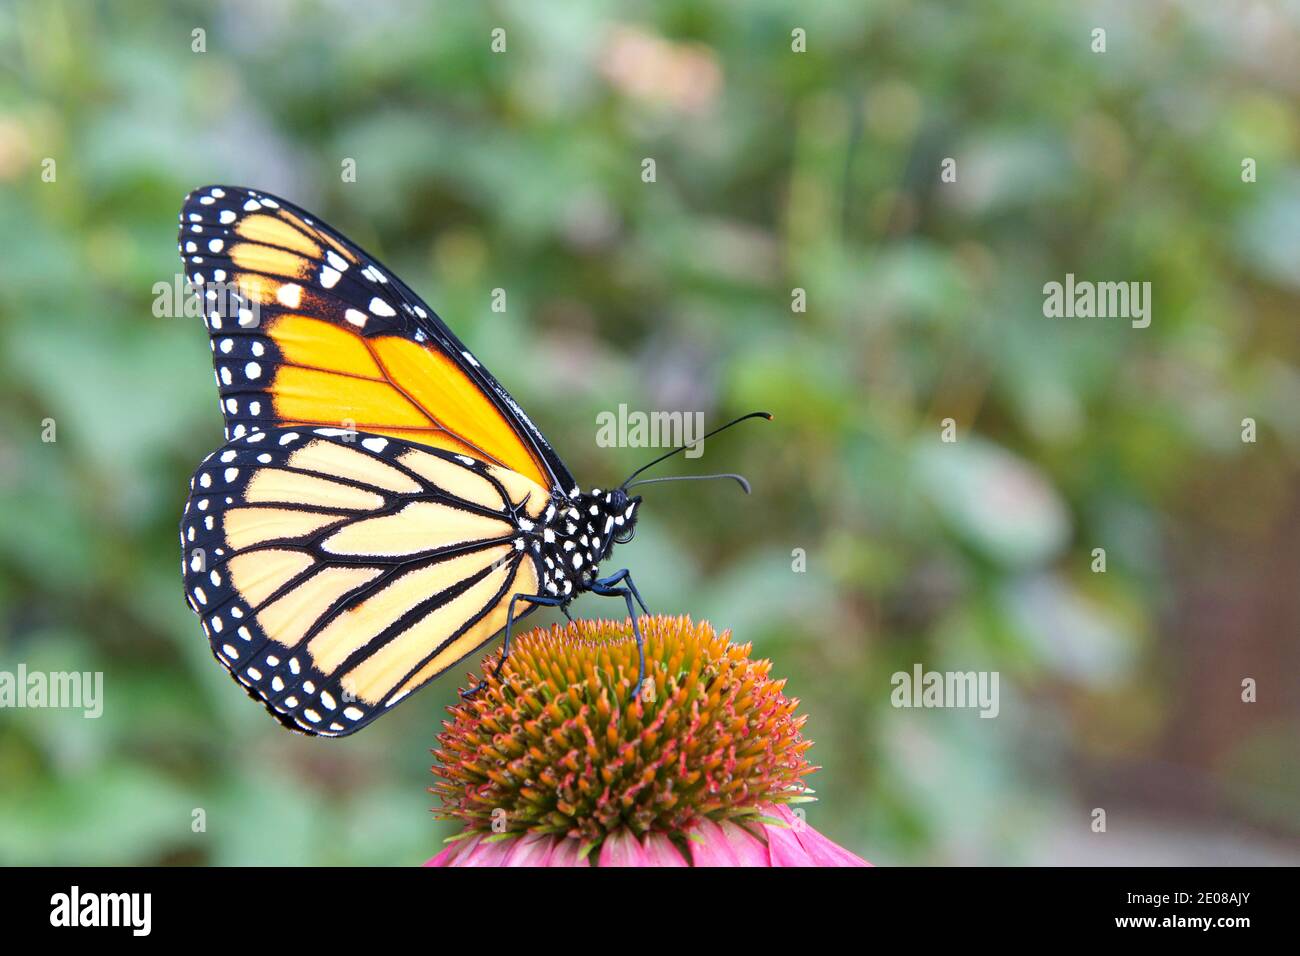 Nahaufnahme der Profilansicht eines weiblichen Monarchschmetterlings auf einer lila Konelblume, grüne Pflanzen OOF im Hintergrund. Stockfoto